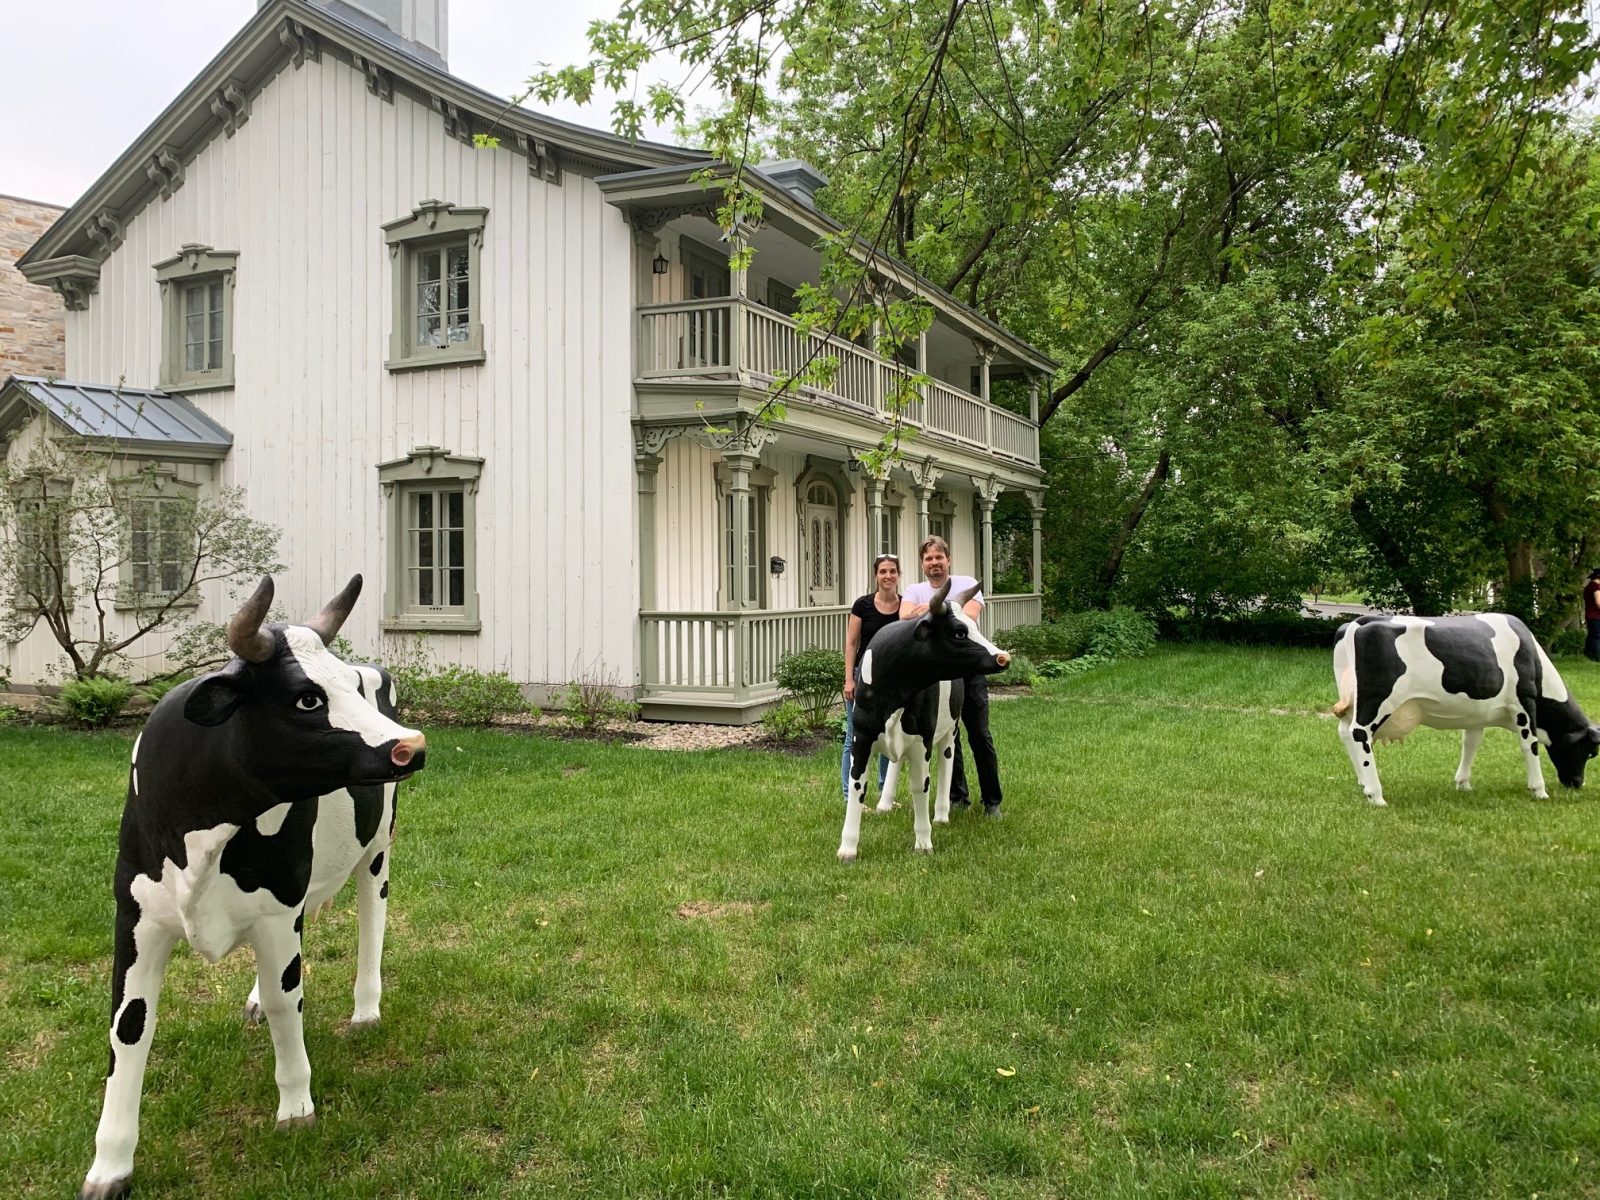 Des vaches urbaines cet été à Boucherville !